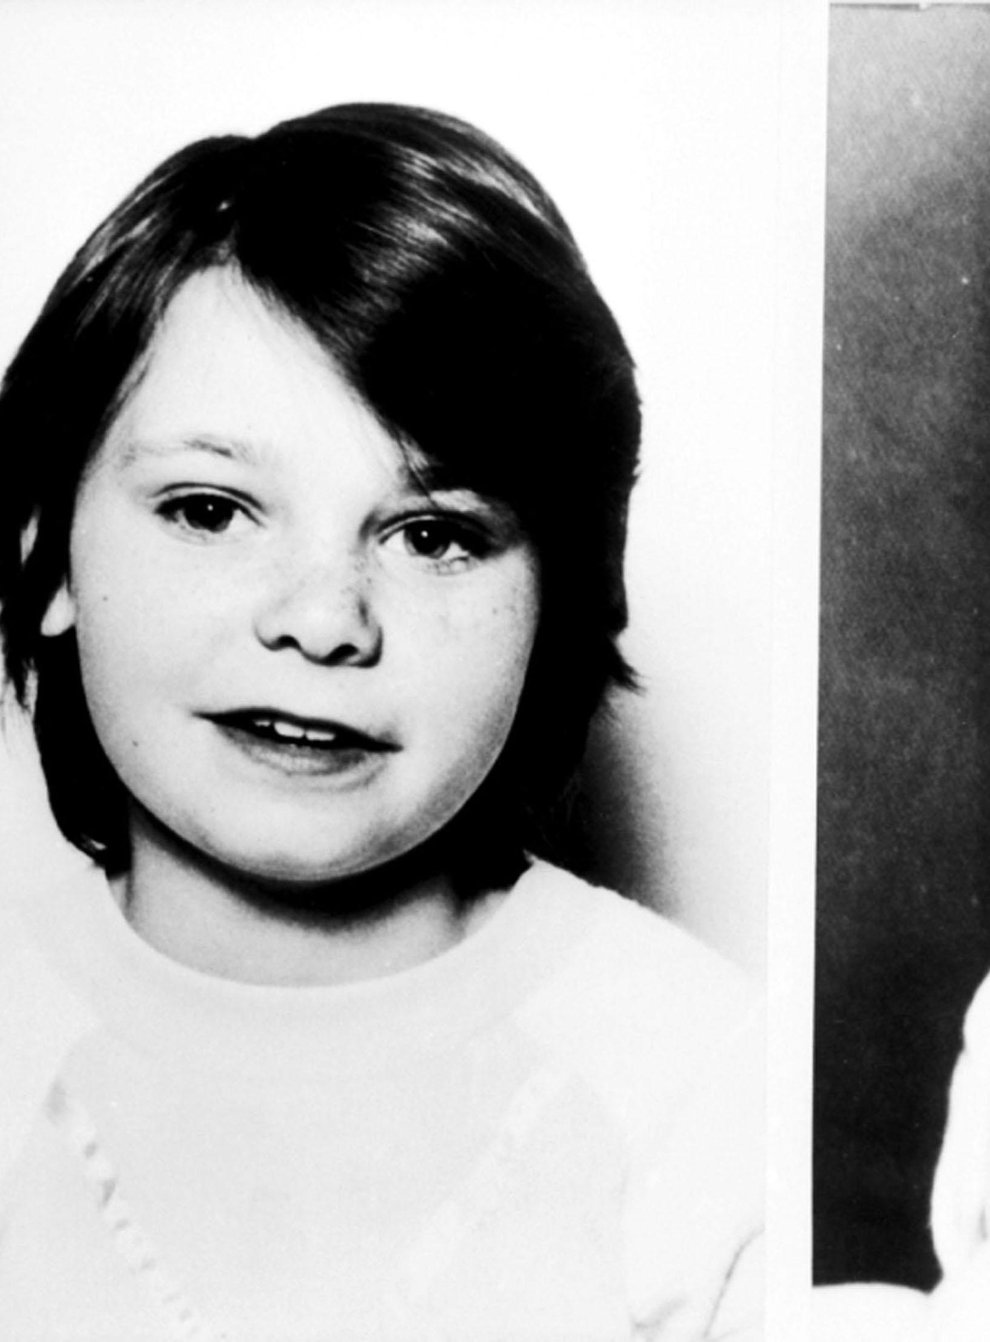 Schoolgirls Karen Hadaway and Nicola Fellows were murdered by paedophile Russell Bishop in Brighton in 1986 (PA)